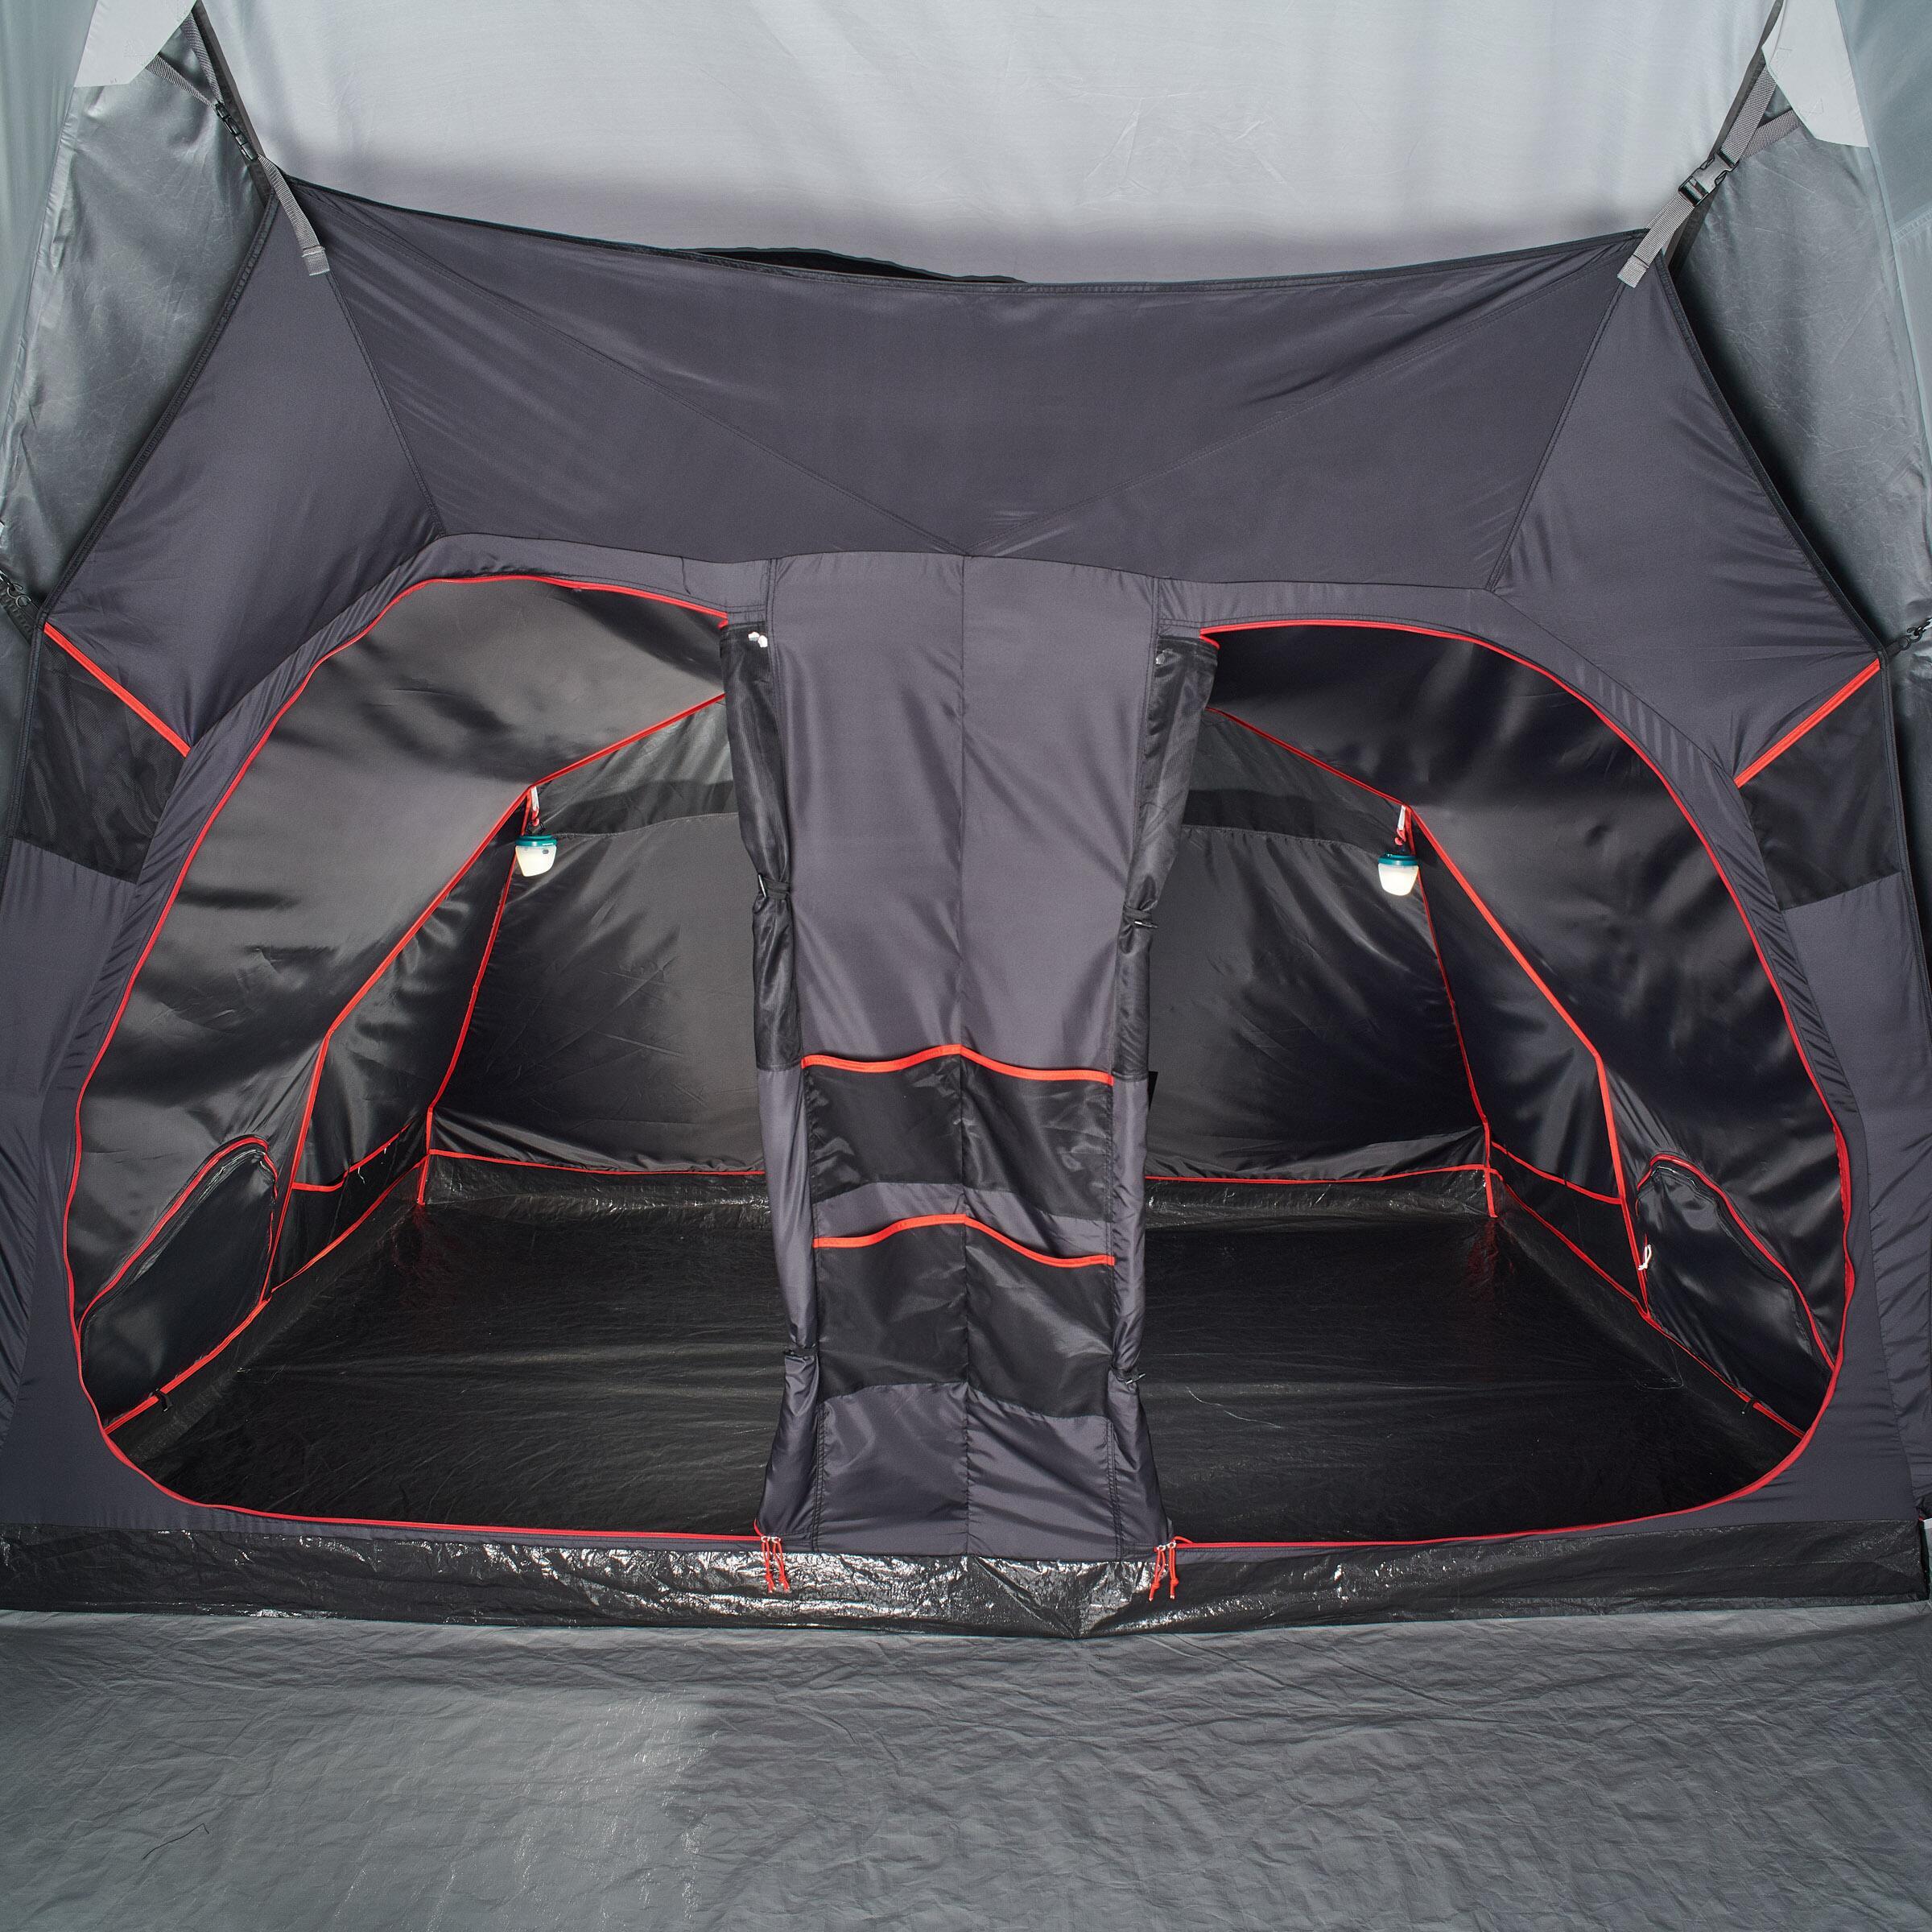 Спальная кабина и пол палатки Quechua Air Seconds 8.4 F&B как запчасть для модели палатки